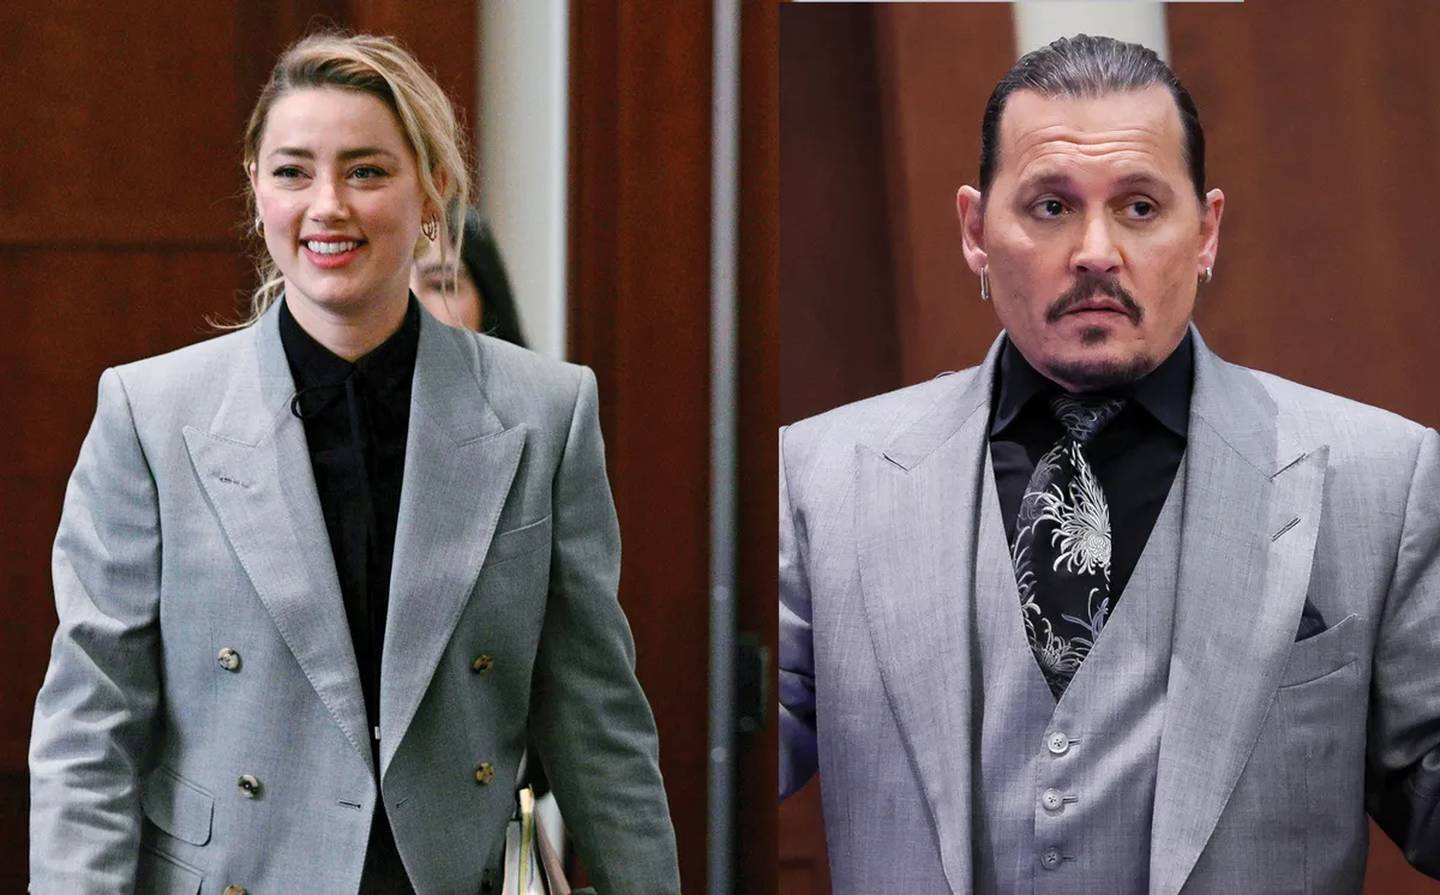 Por qué Amber Heard copia los 'looks' de Johnny Depp en el juicio que los  enfrenta? | La Nación